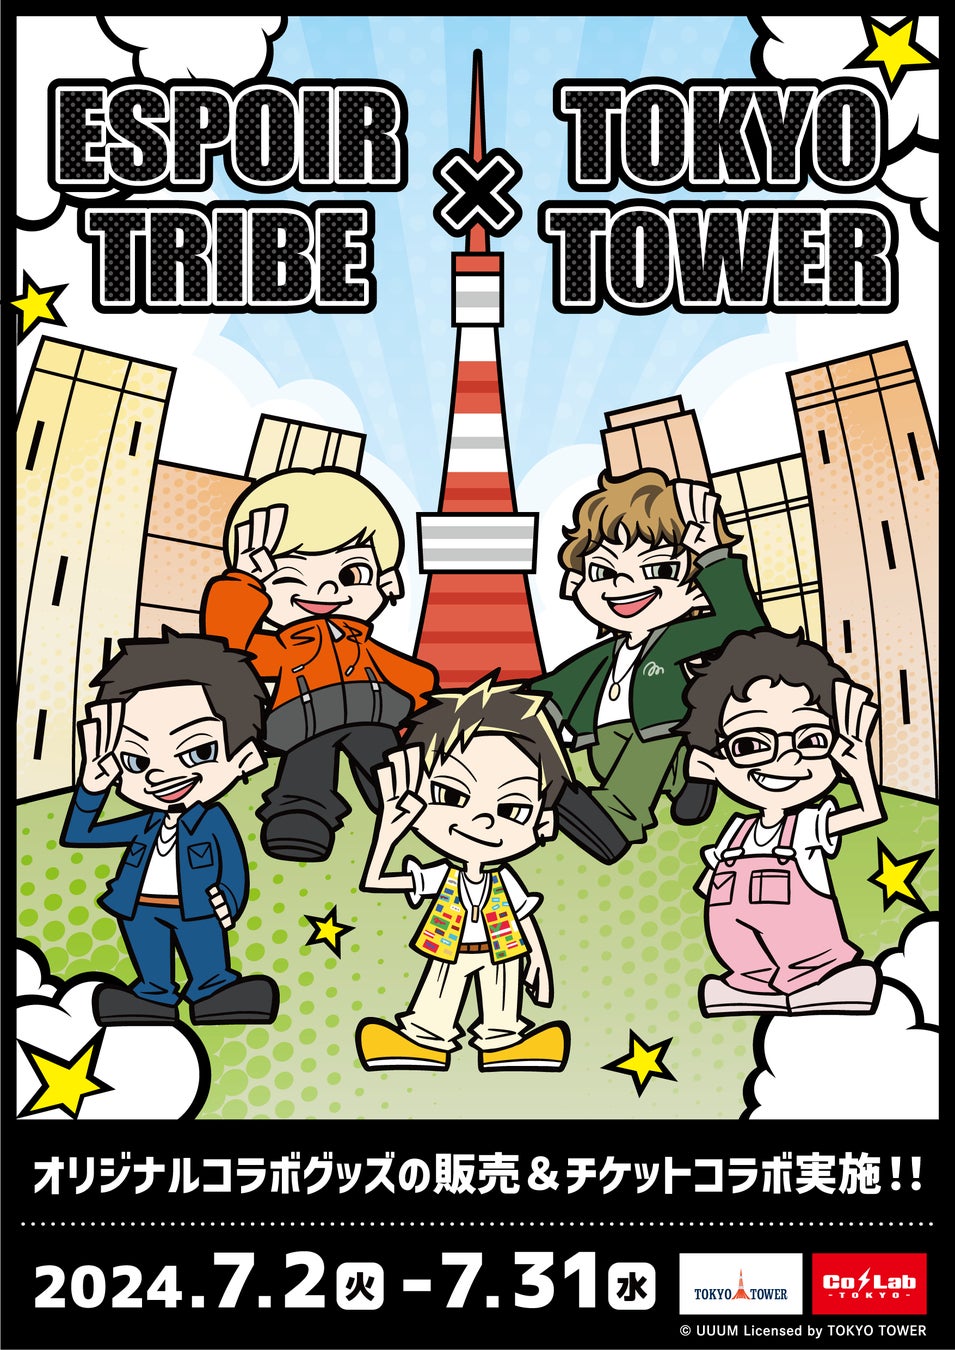 人気急上昇中の5人組動画クリエイター「ESPOIR TRIBE」と東京タワーの限定コラボイベント開催決定！！